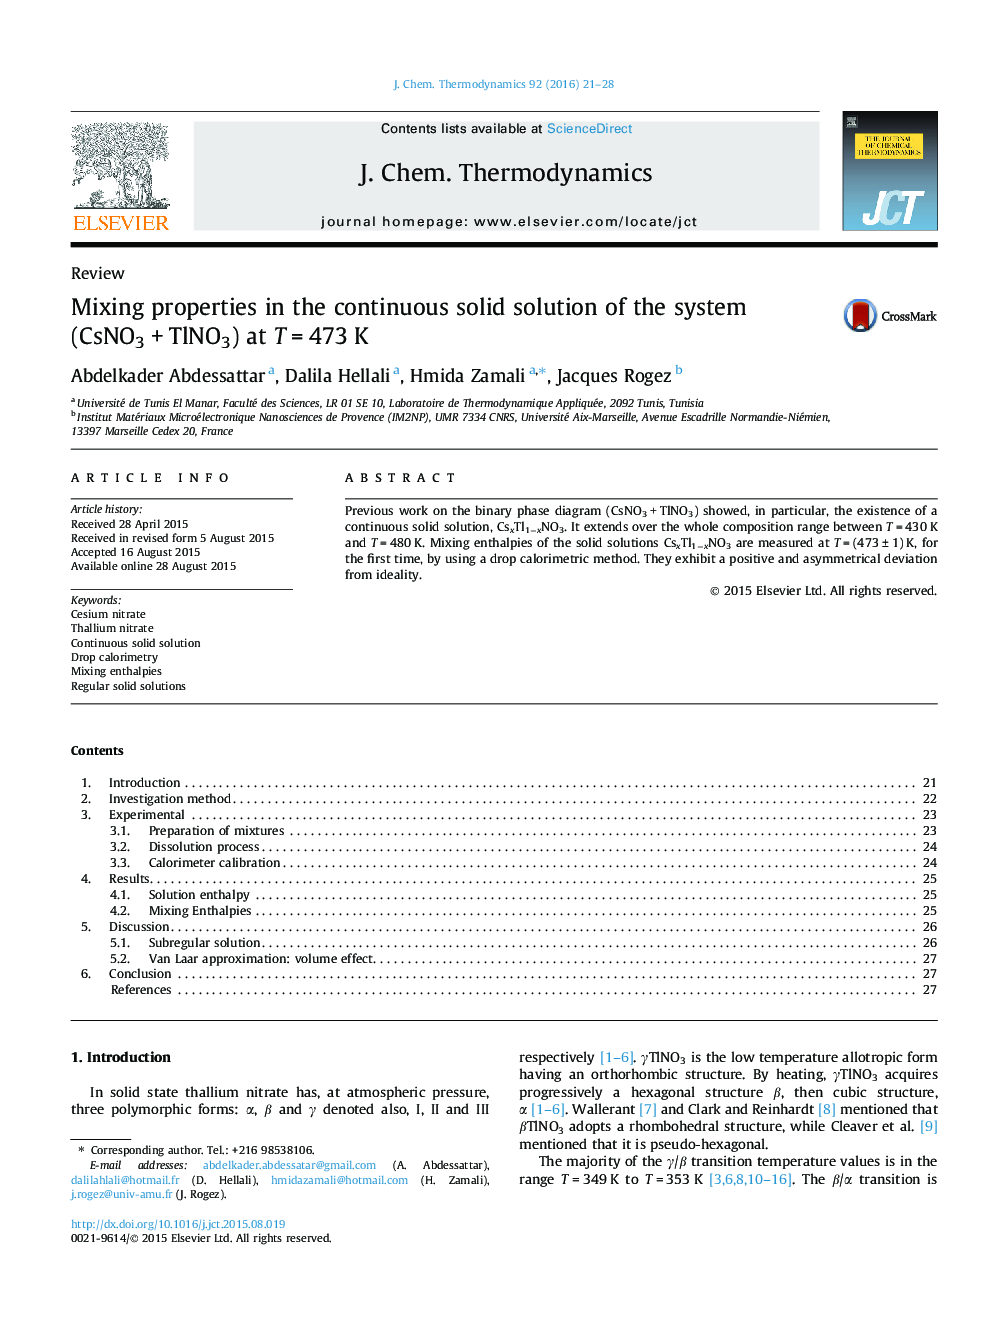 مخلوط کردن خواص در محلول جامد مداوم سیستم (CsNO3 + TlNO3) در T = 473 K